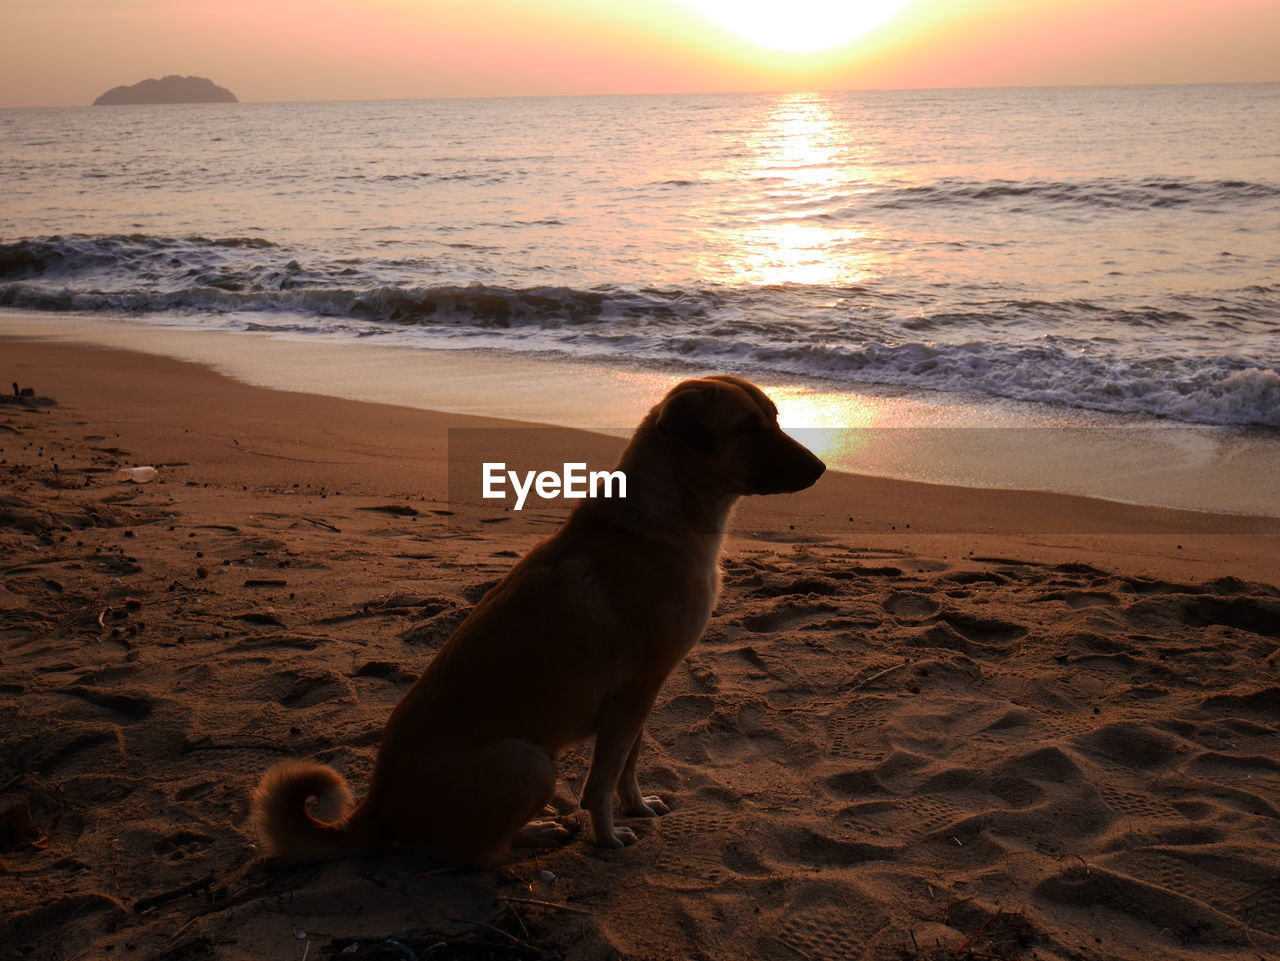 DOG ON BEACH AGAINST SUNSET SKY